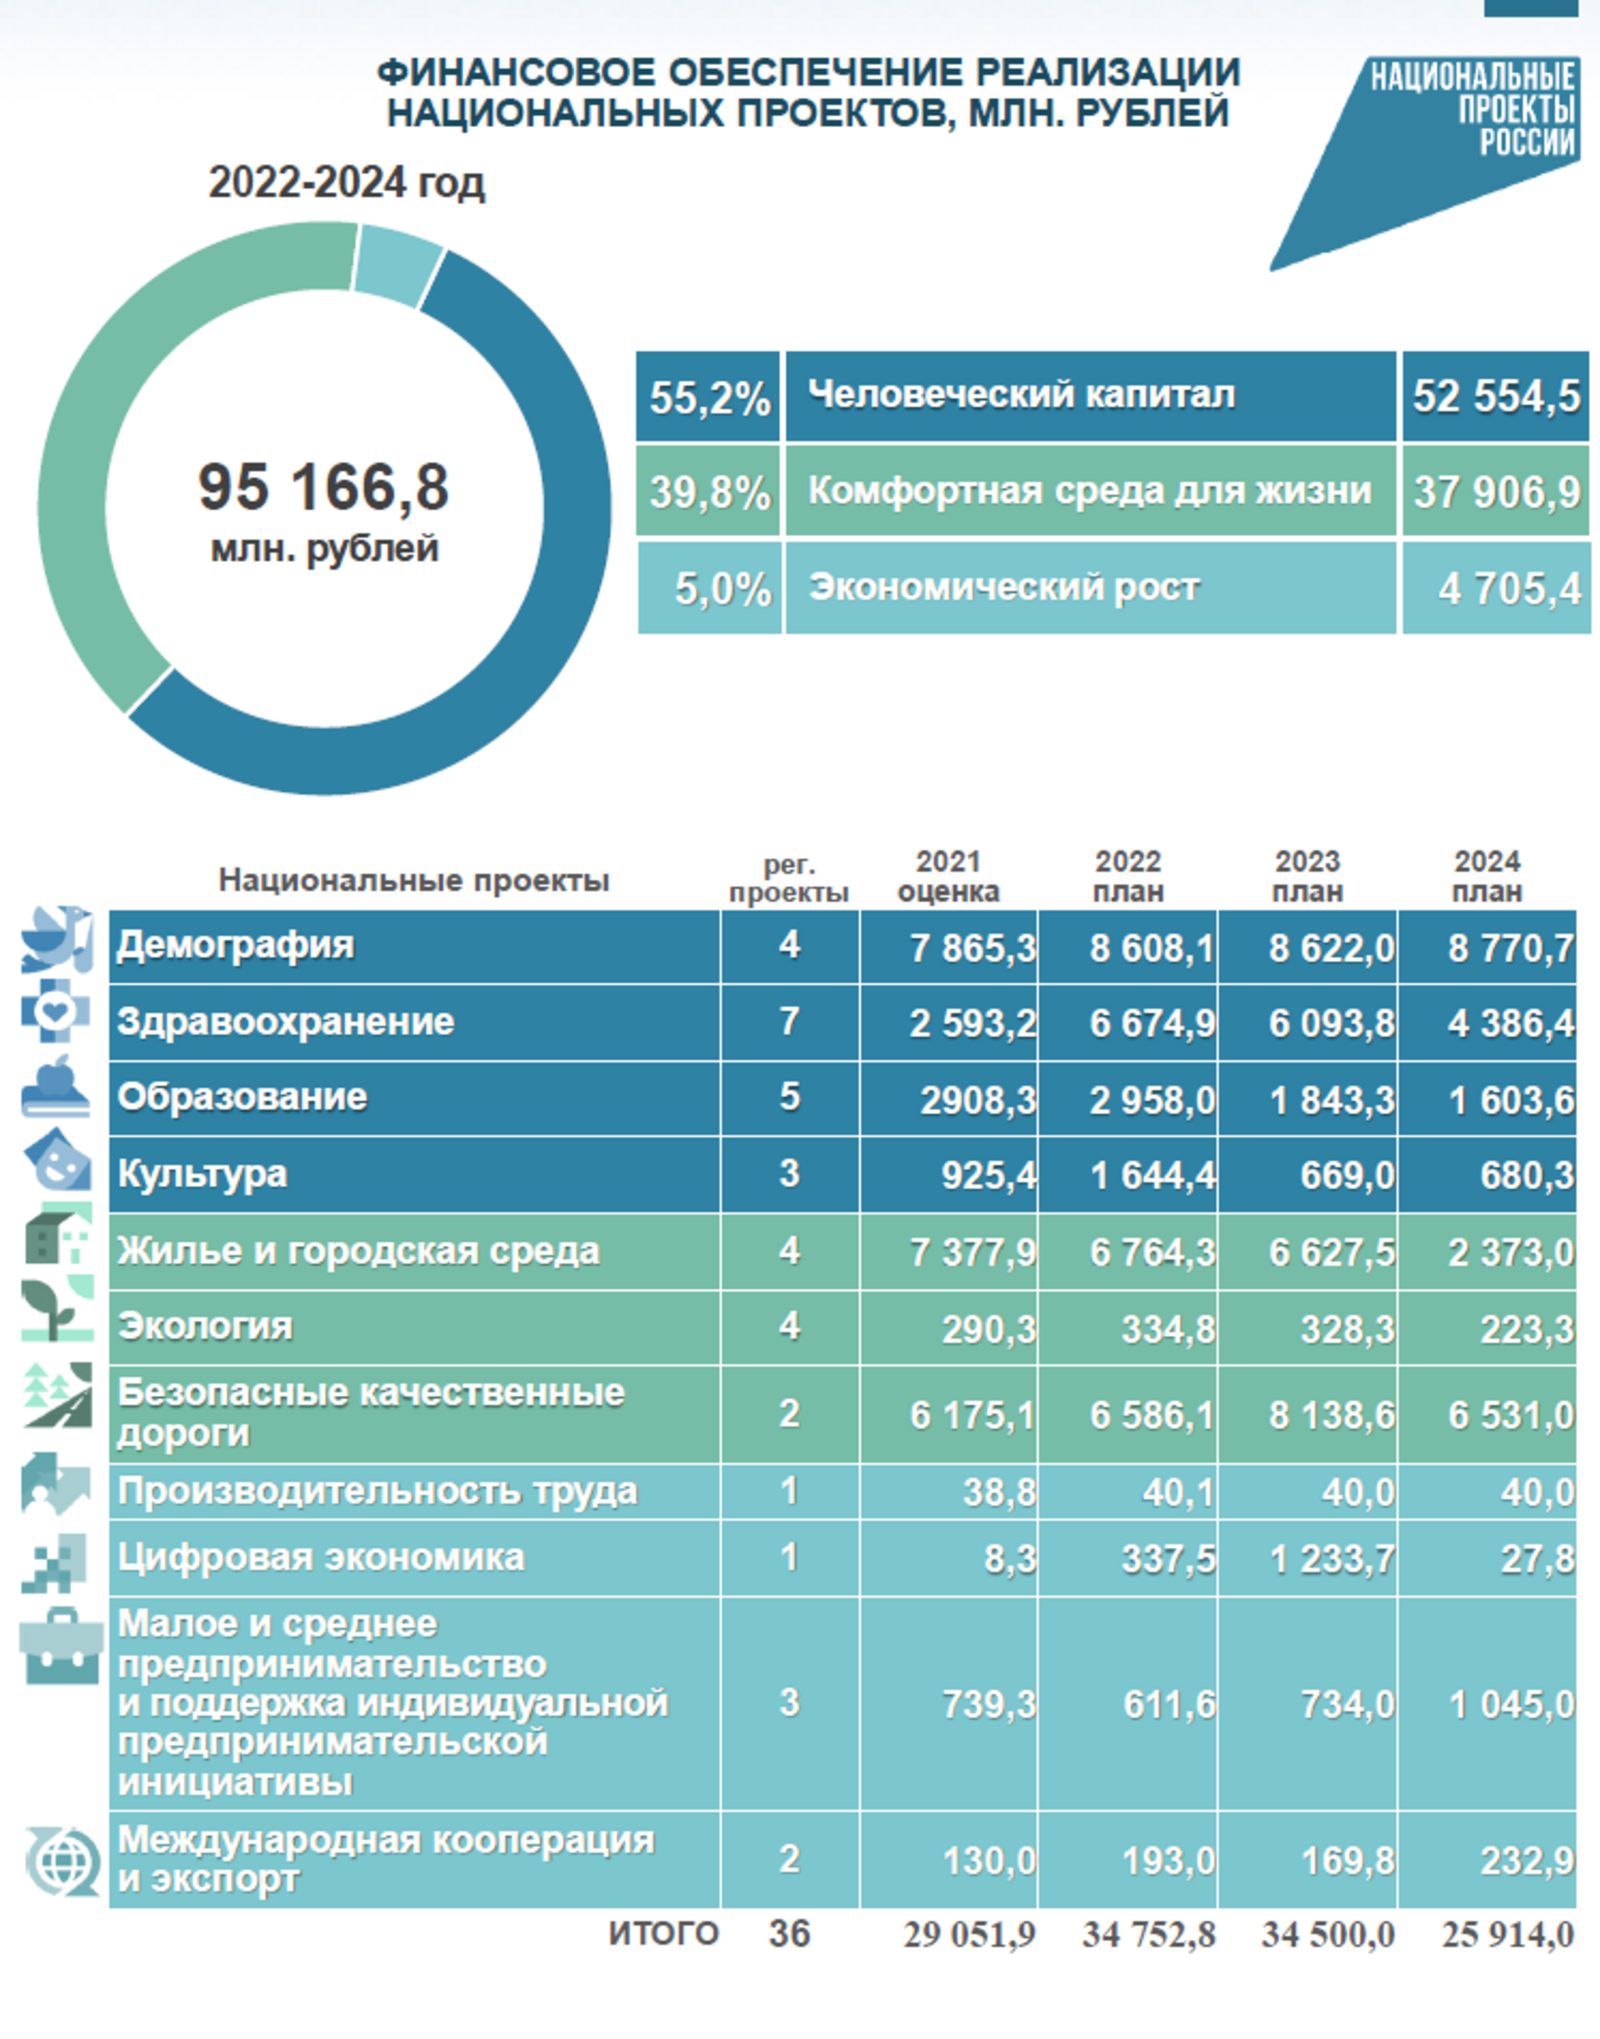 Бюджет Башкирии — 2022: из чего складывается и на что будет расходоваться?